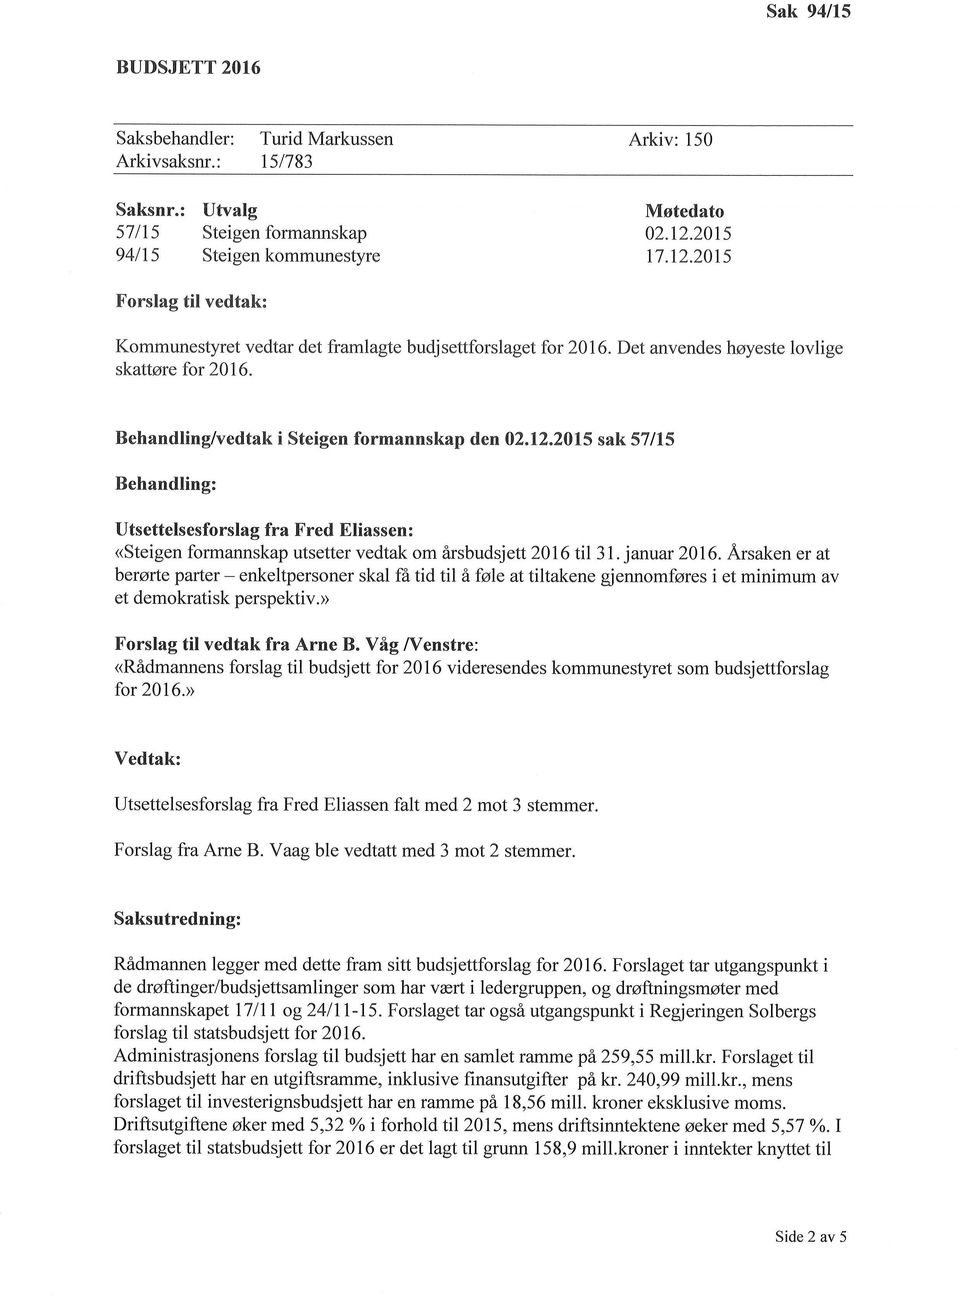 2015 sak 571L5 Behandling: Utsettelsesforslag fra Fred Eliassen: <Steigen formannskap utsetter vedtak om årsbudsj ett20l6 til 31. januar 2016.